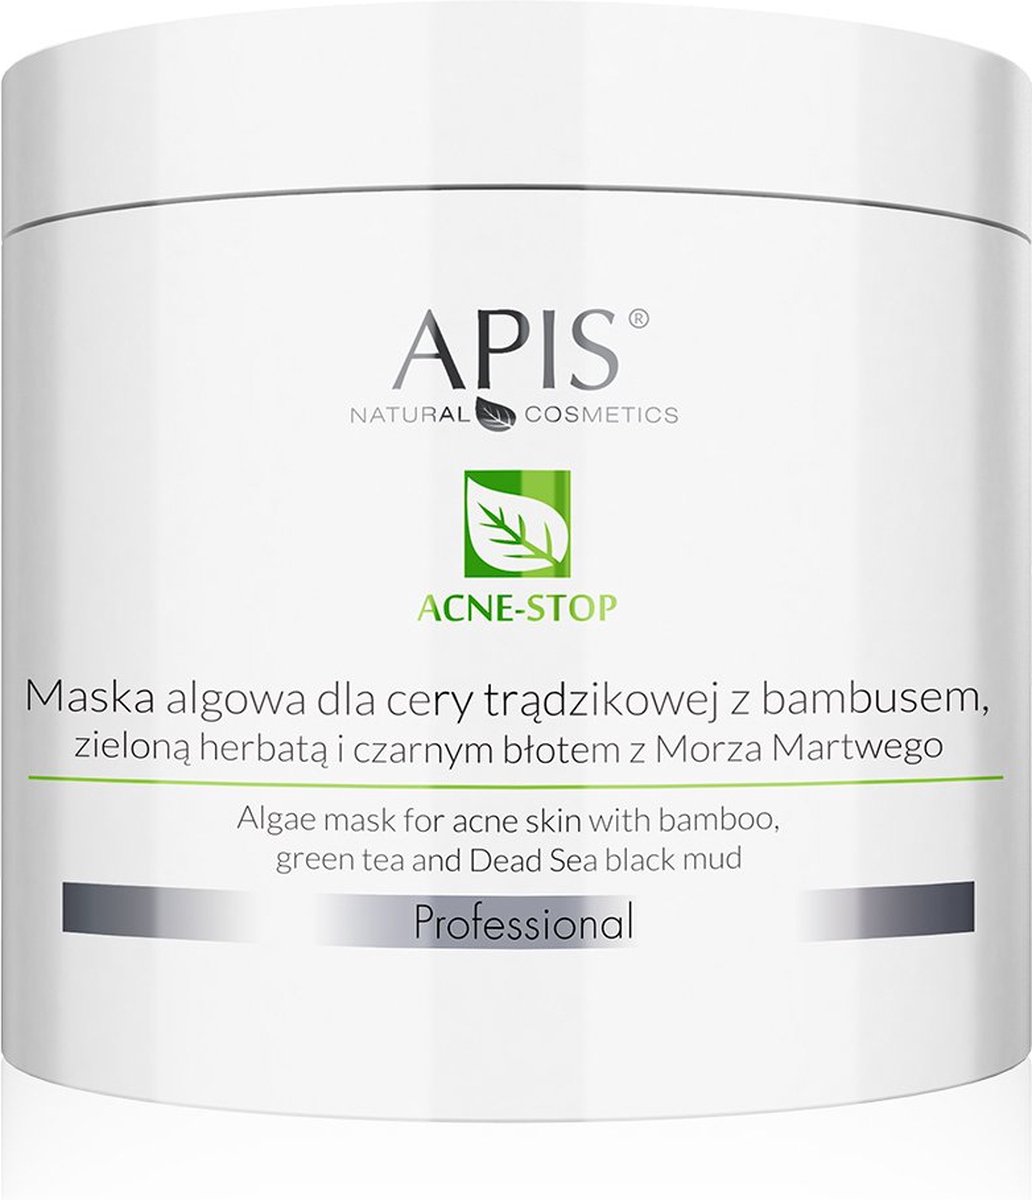 Acne-Stop algenmasker voor de acnegevoelige huid met bamboe groene thee en zwarte modder uit de Dode Zee 200g